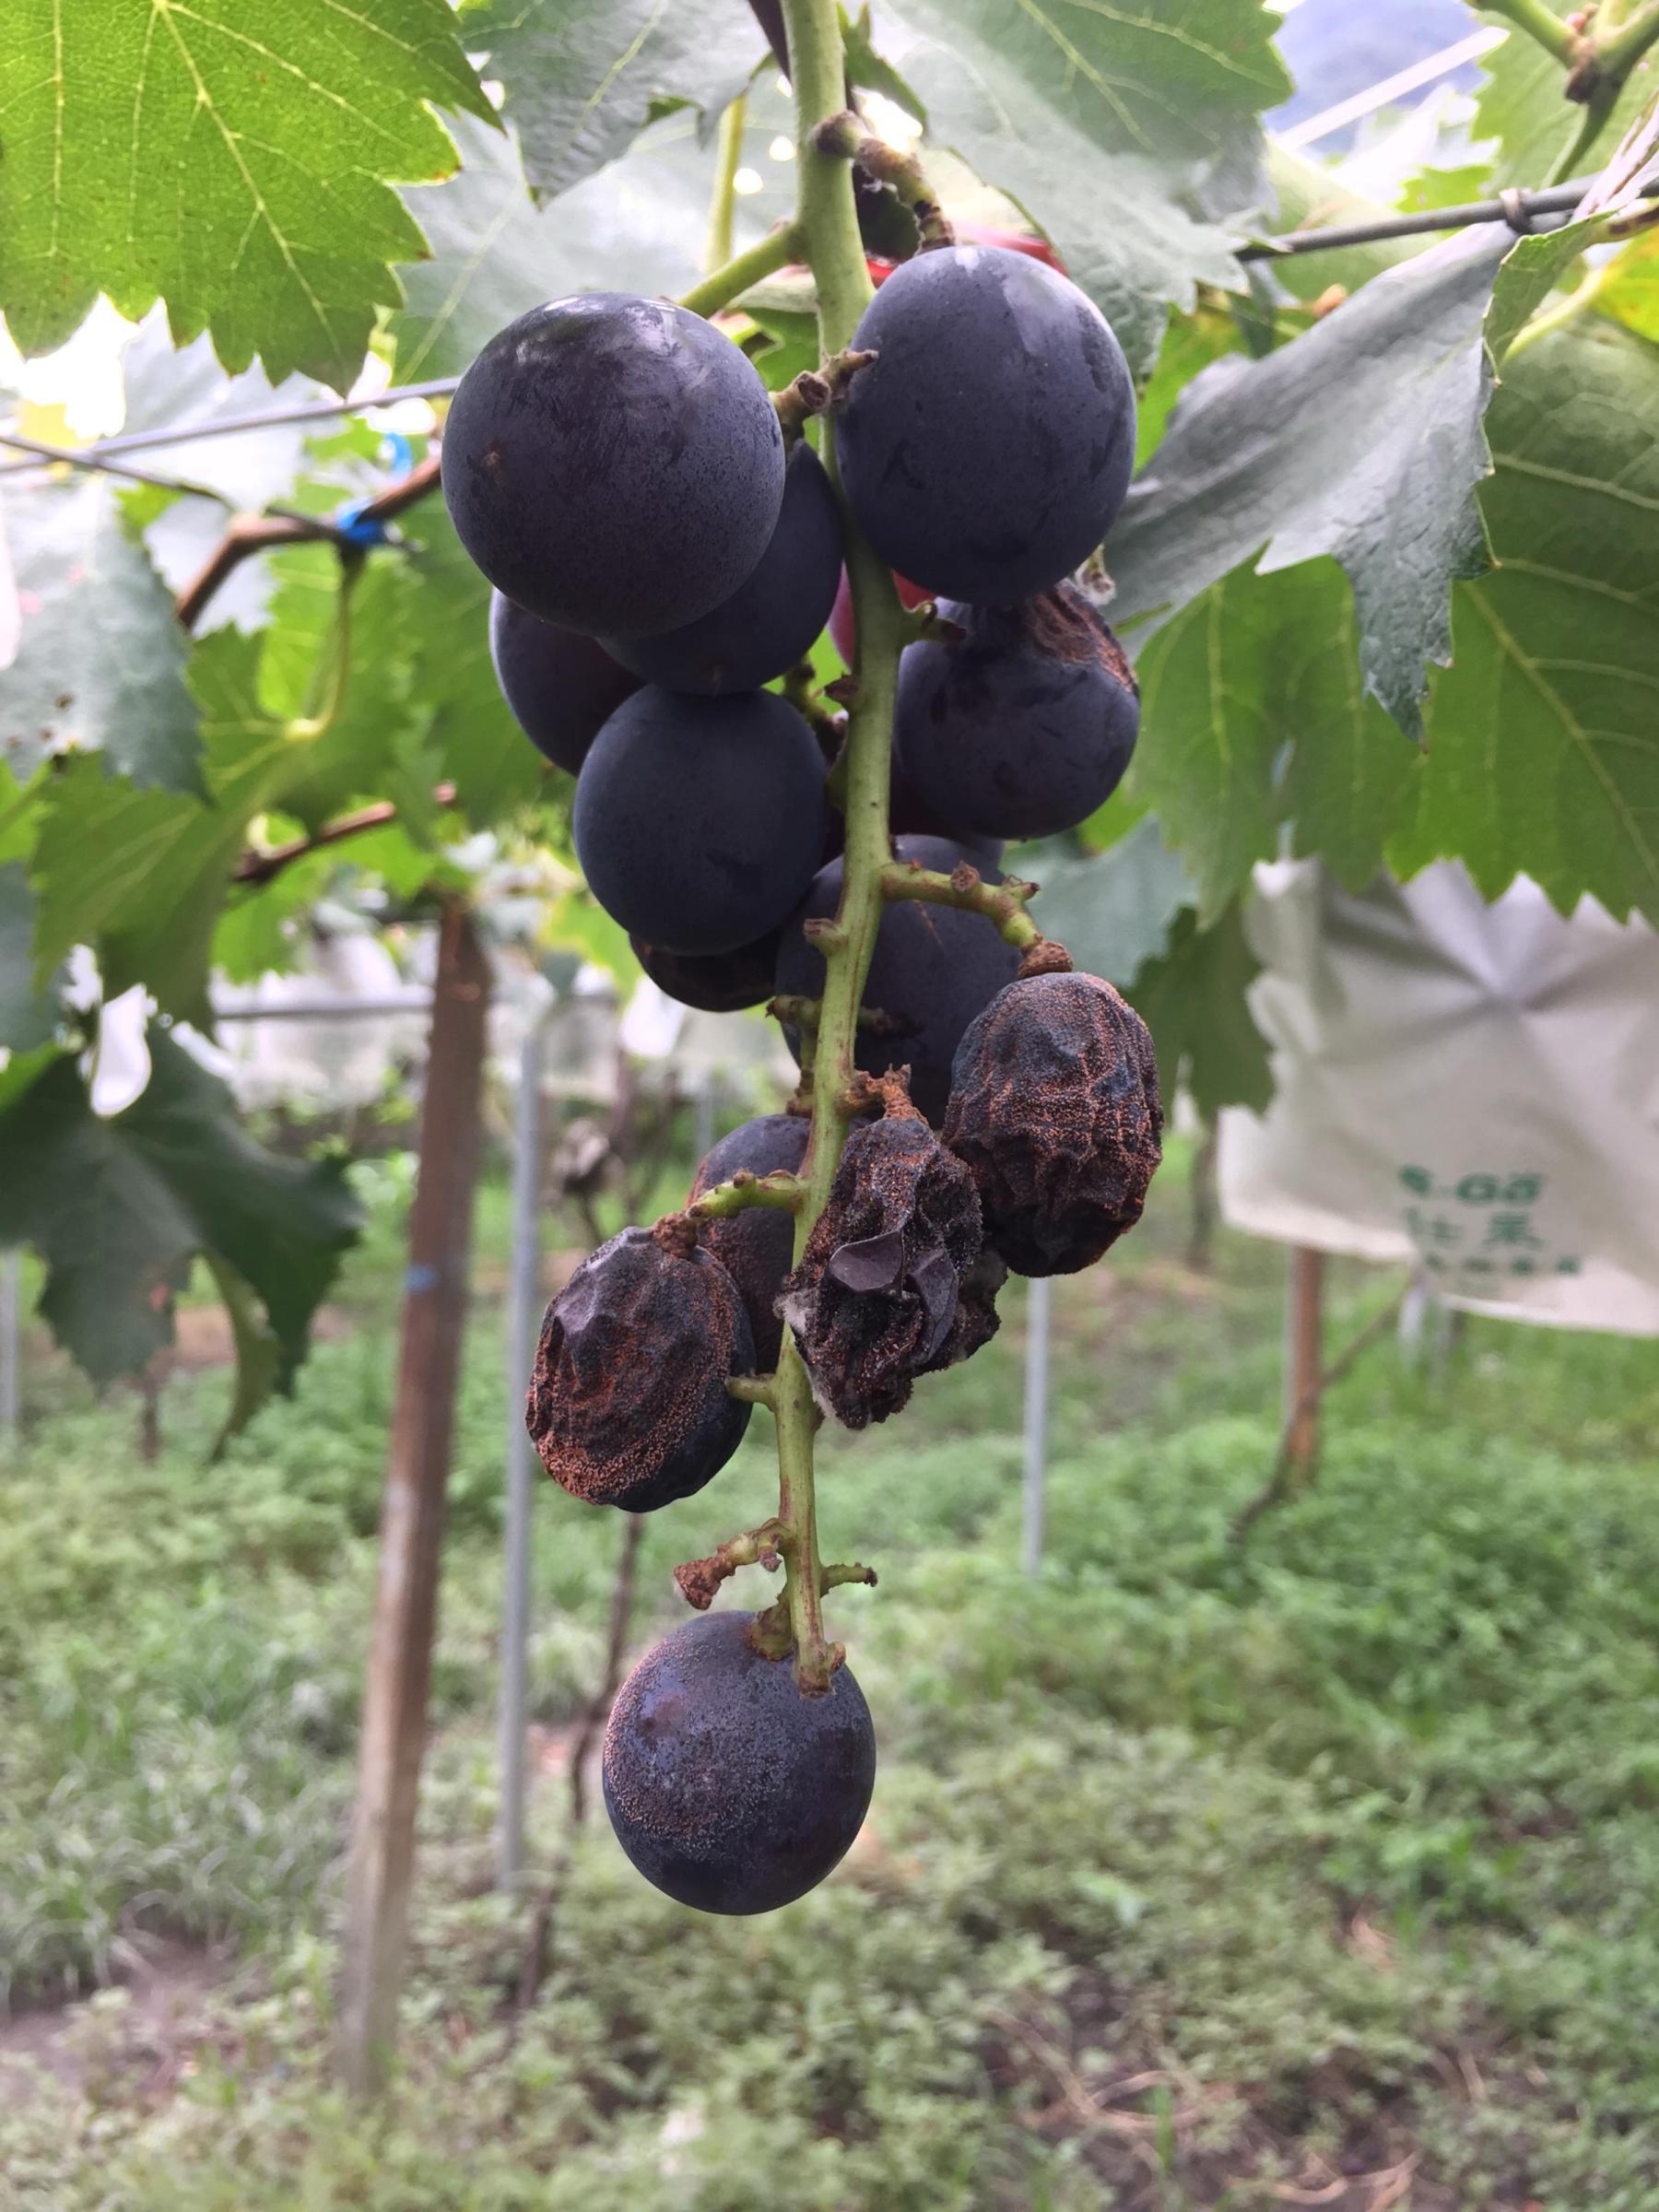 葡萄晚腐病在果實成熟後才顯現病徵，使果實腐爛皺縮而失去商品價值。